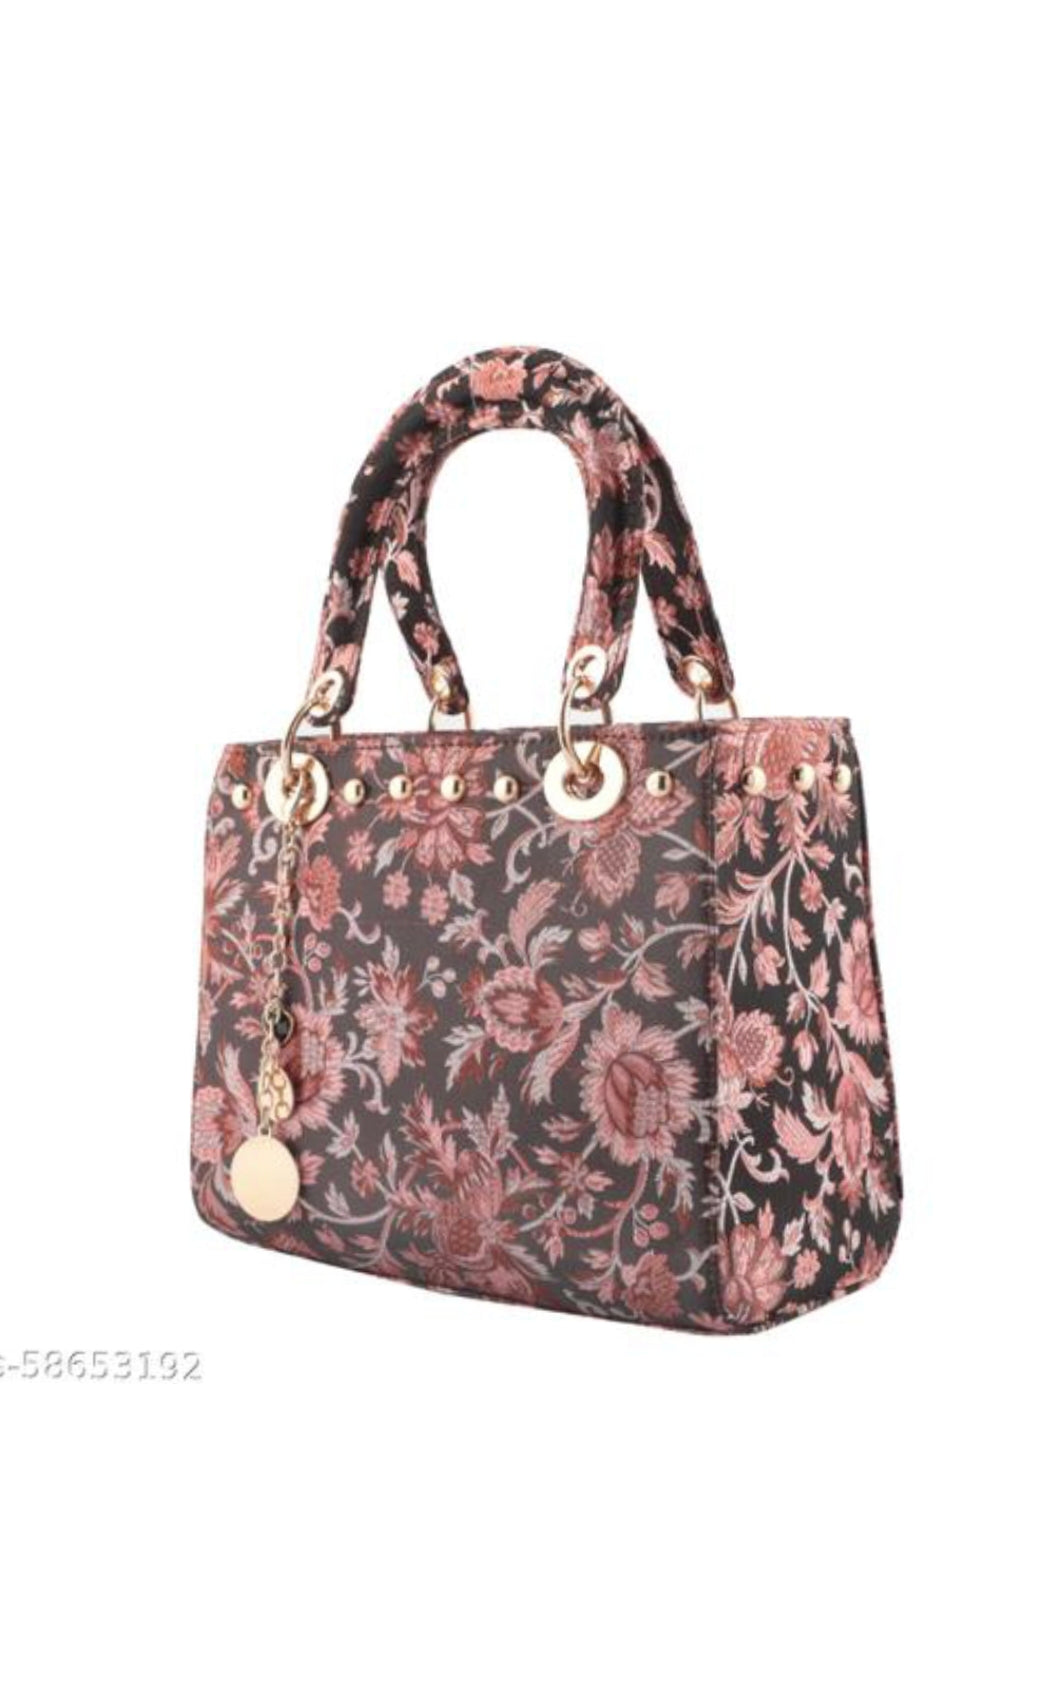 Medium Floral Design Handbag with Sling Belt